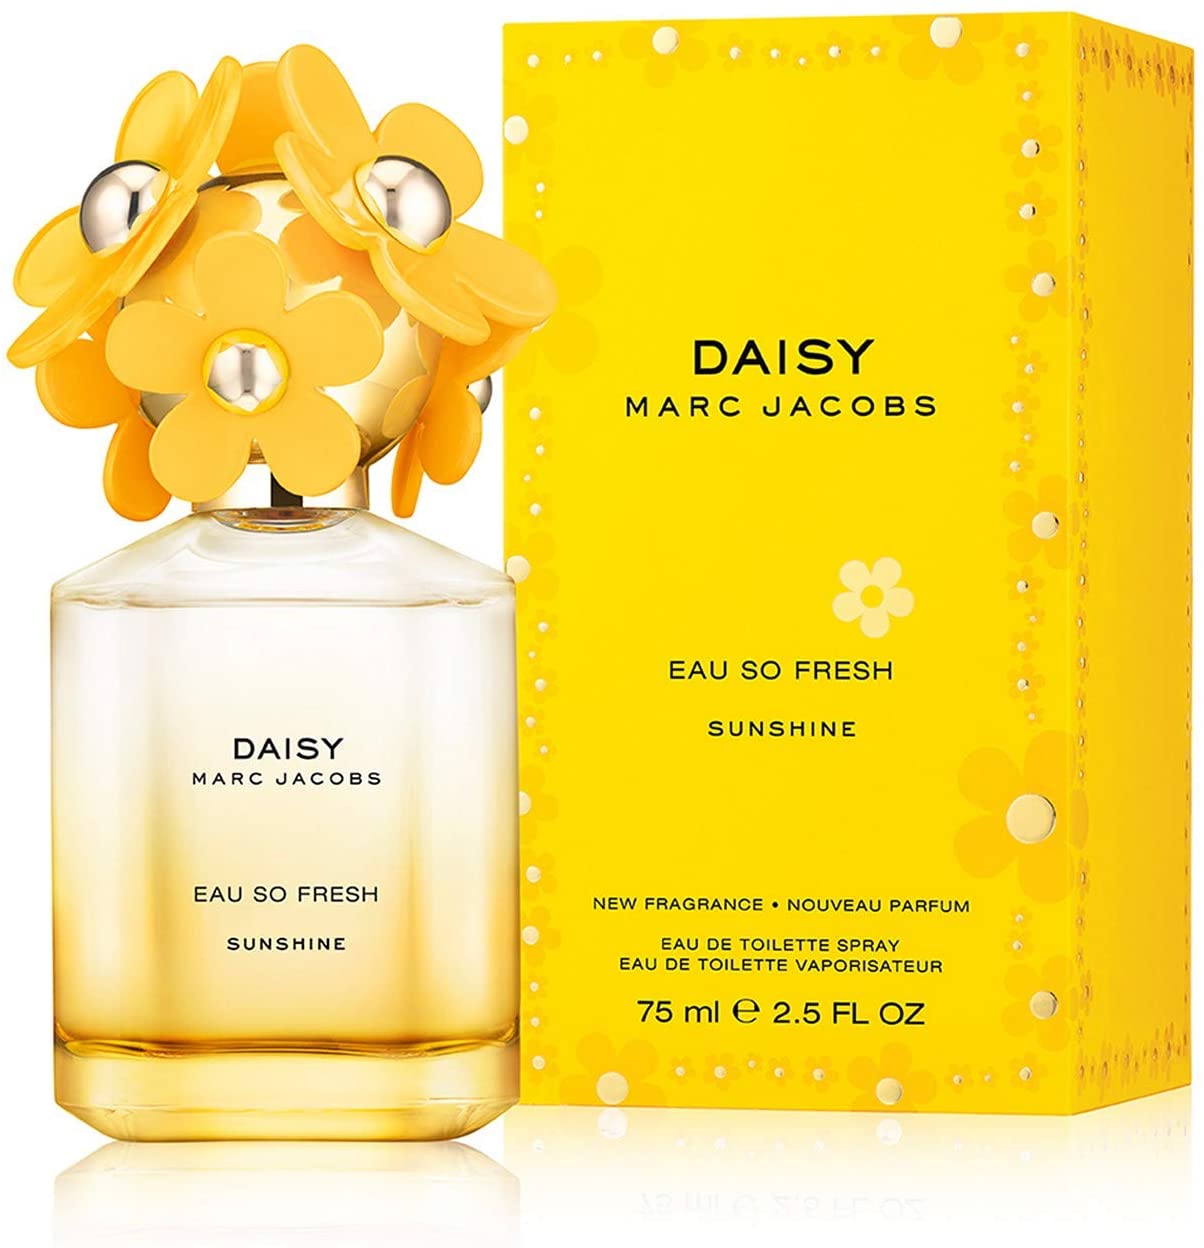 Nước hoa Daisy Eau So Fresh Twinkle for women  Marc Jacobs